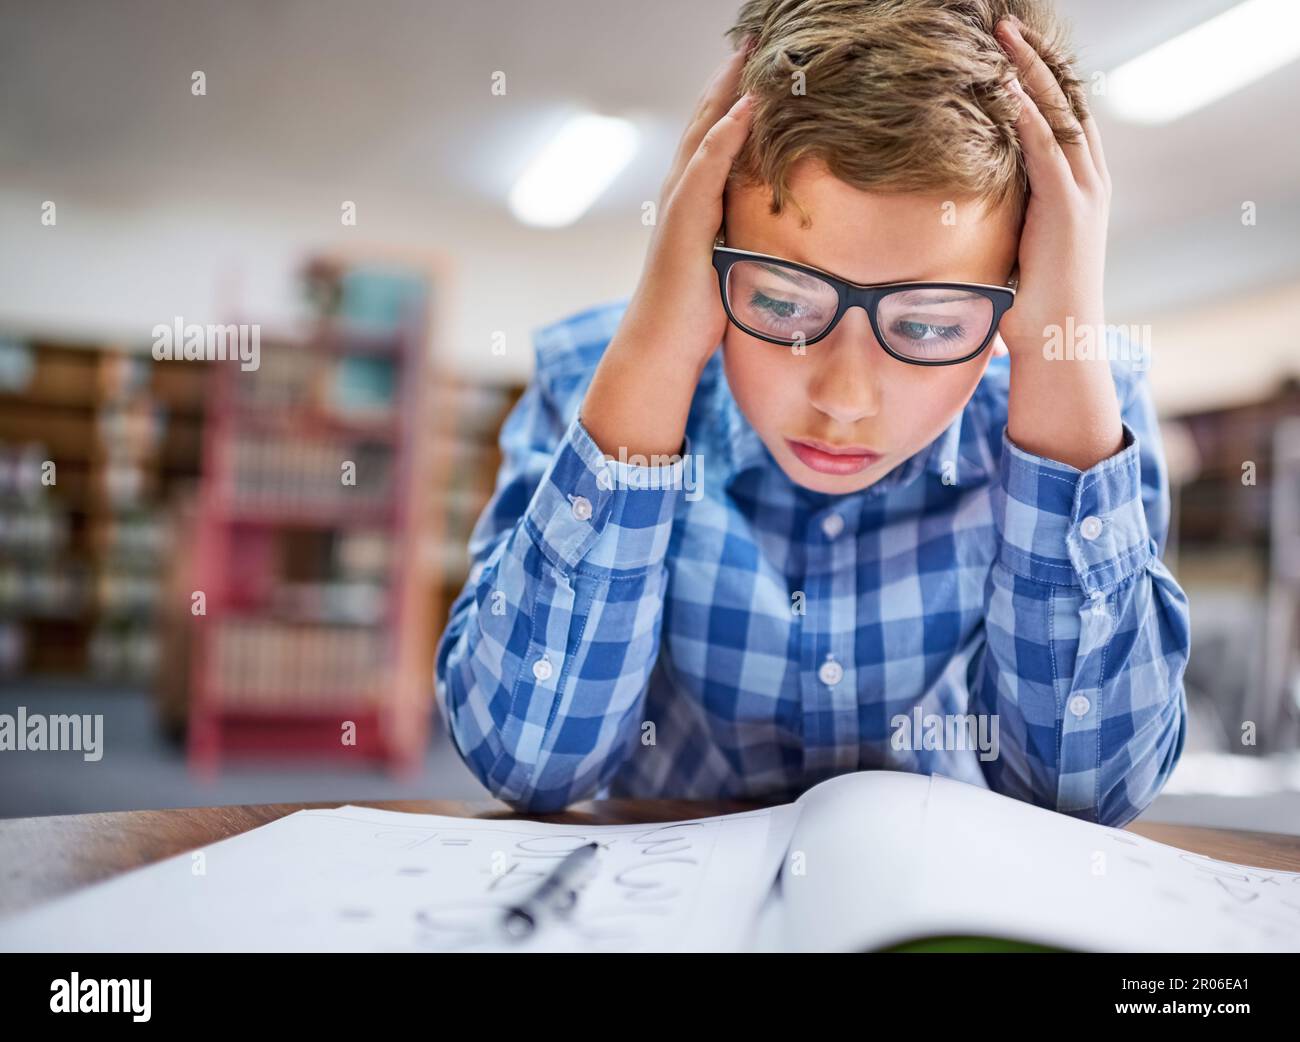 Je suis tellement confus... un jeune garçon qui regarde stressé pendant qu'il travaille en classe à l'école. Banque D'Images